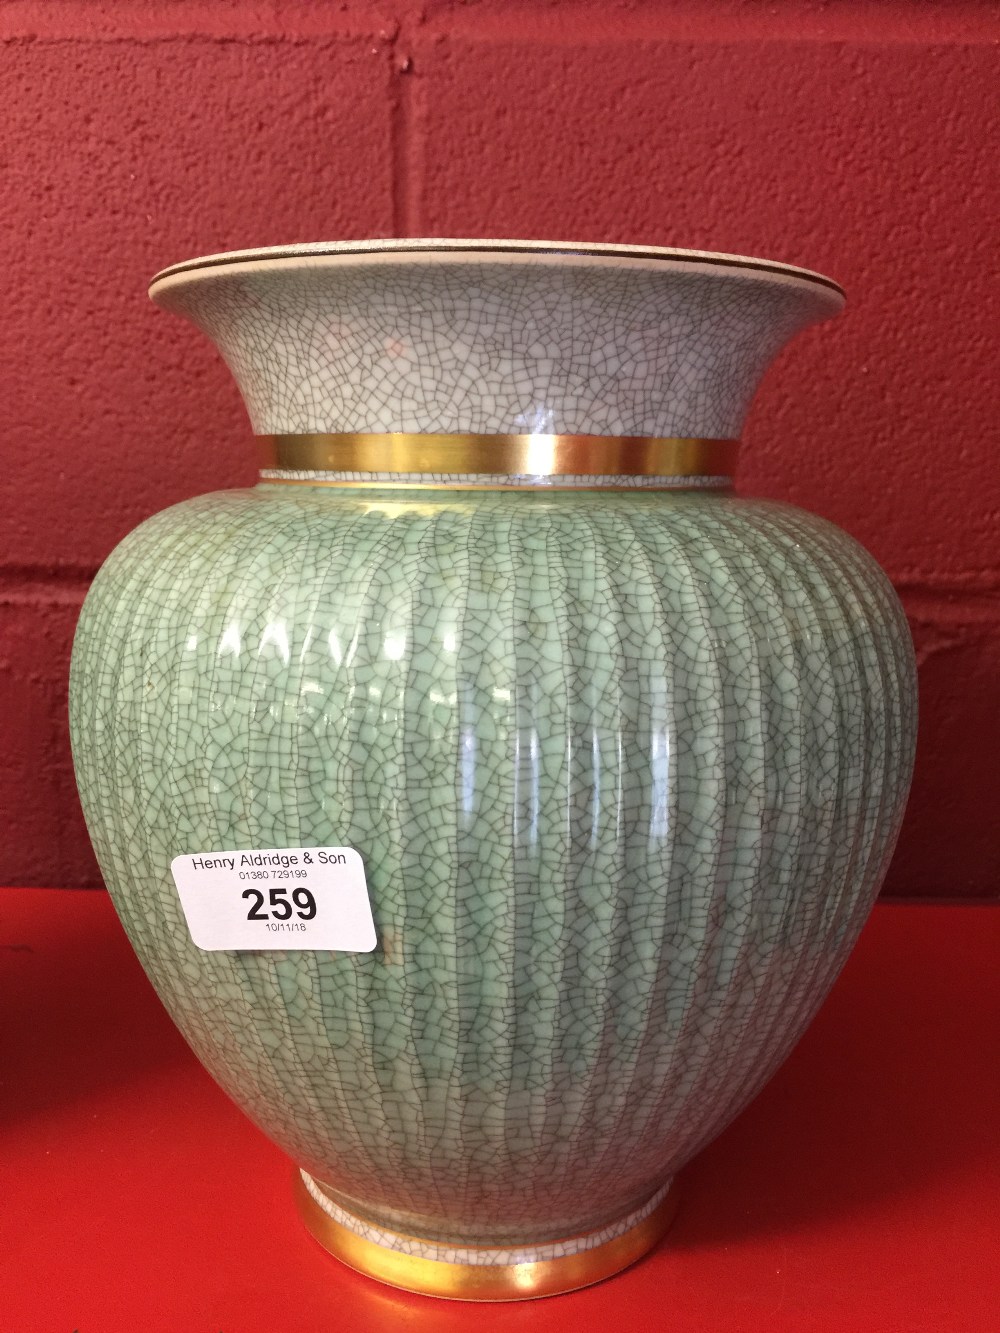 20th cent. Ceramics: Royal Copenhagen Celadon vase, crackle glaze, baluster shape. Fluted design,